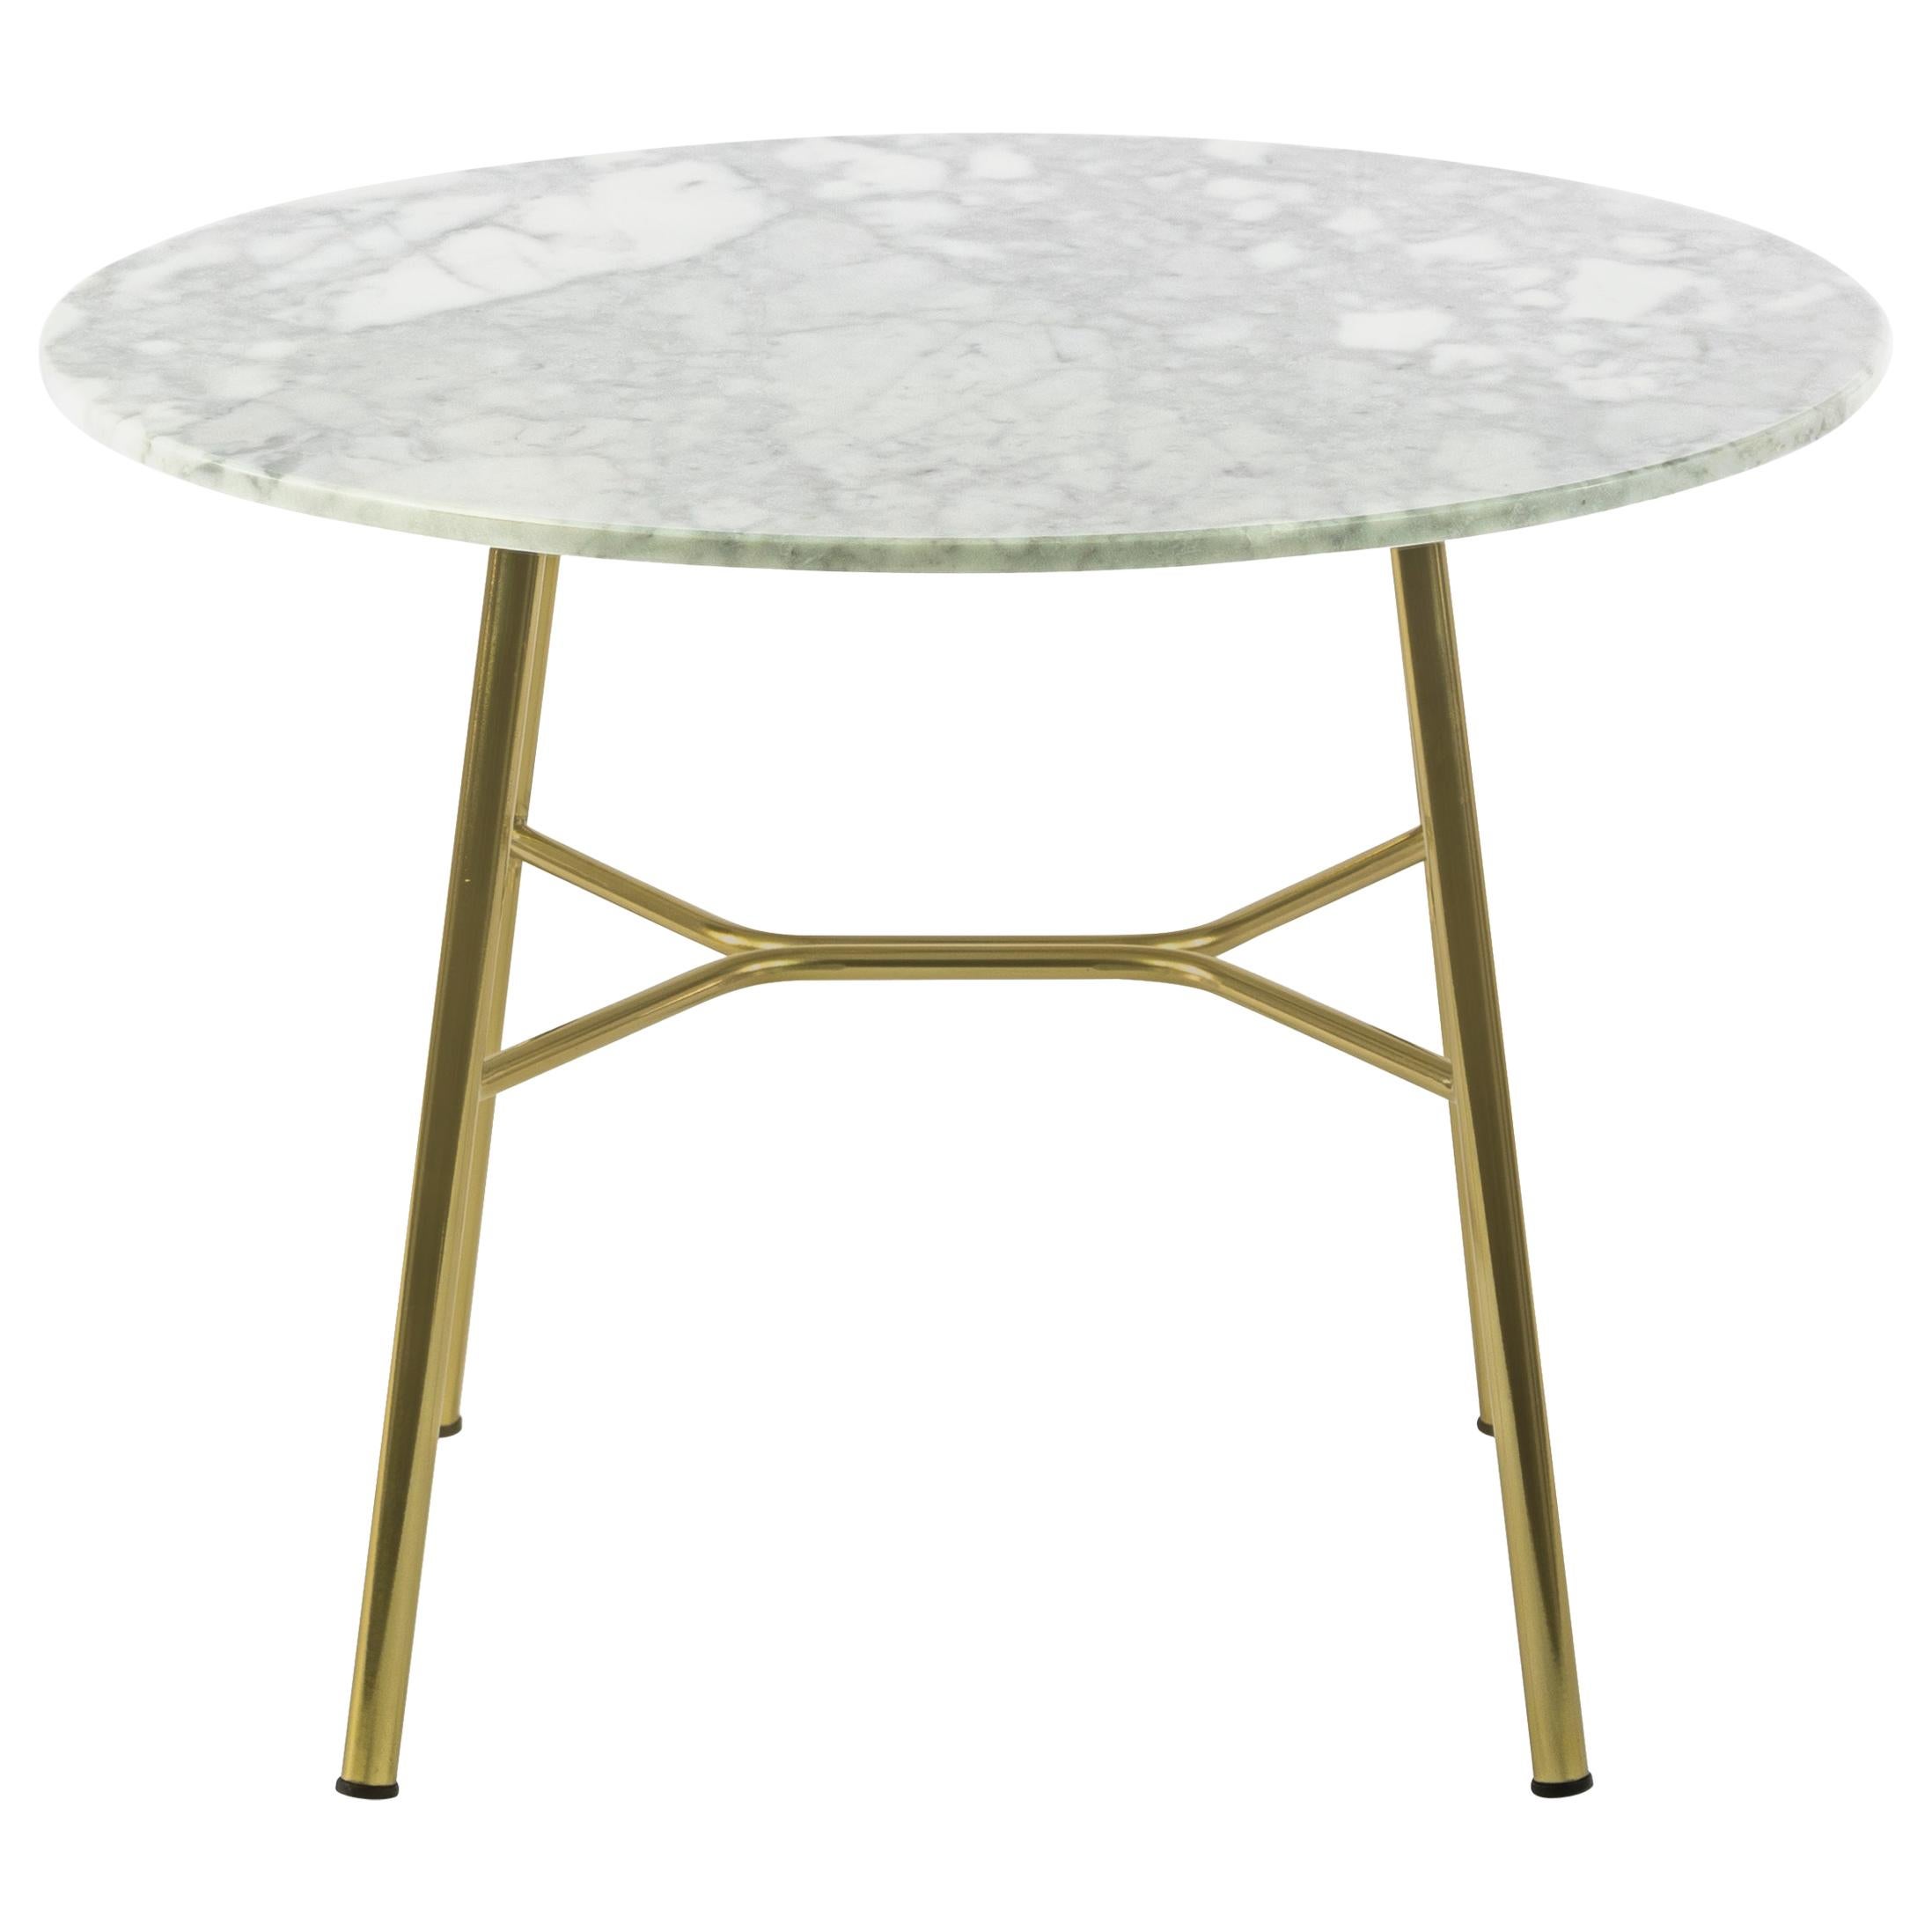 Petite table Yuki, cadre métallique, rond, couleur blanche, design, table basse, marbre en vente